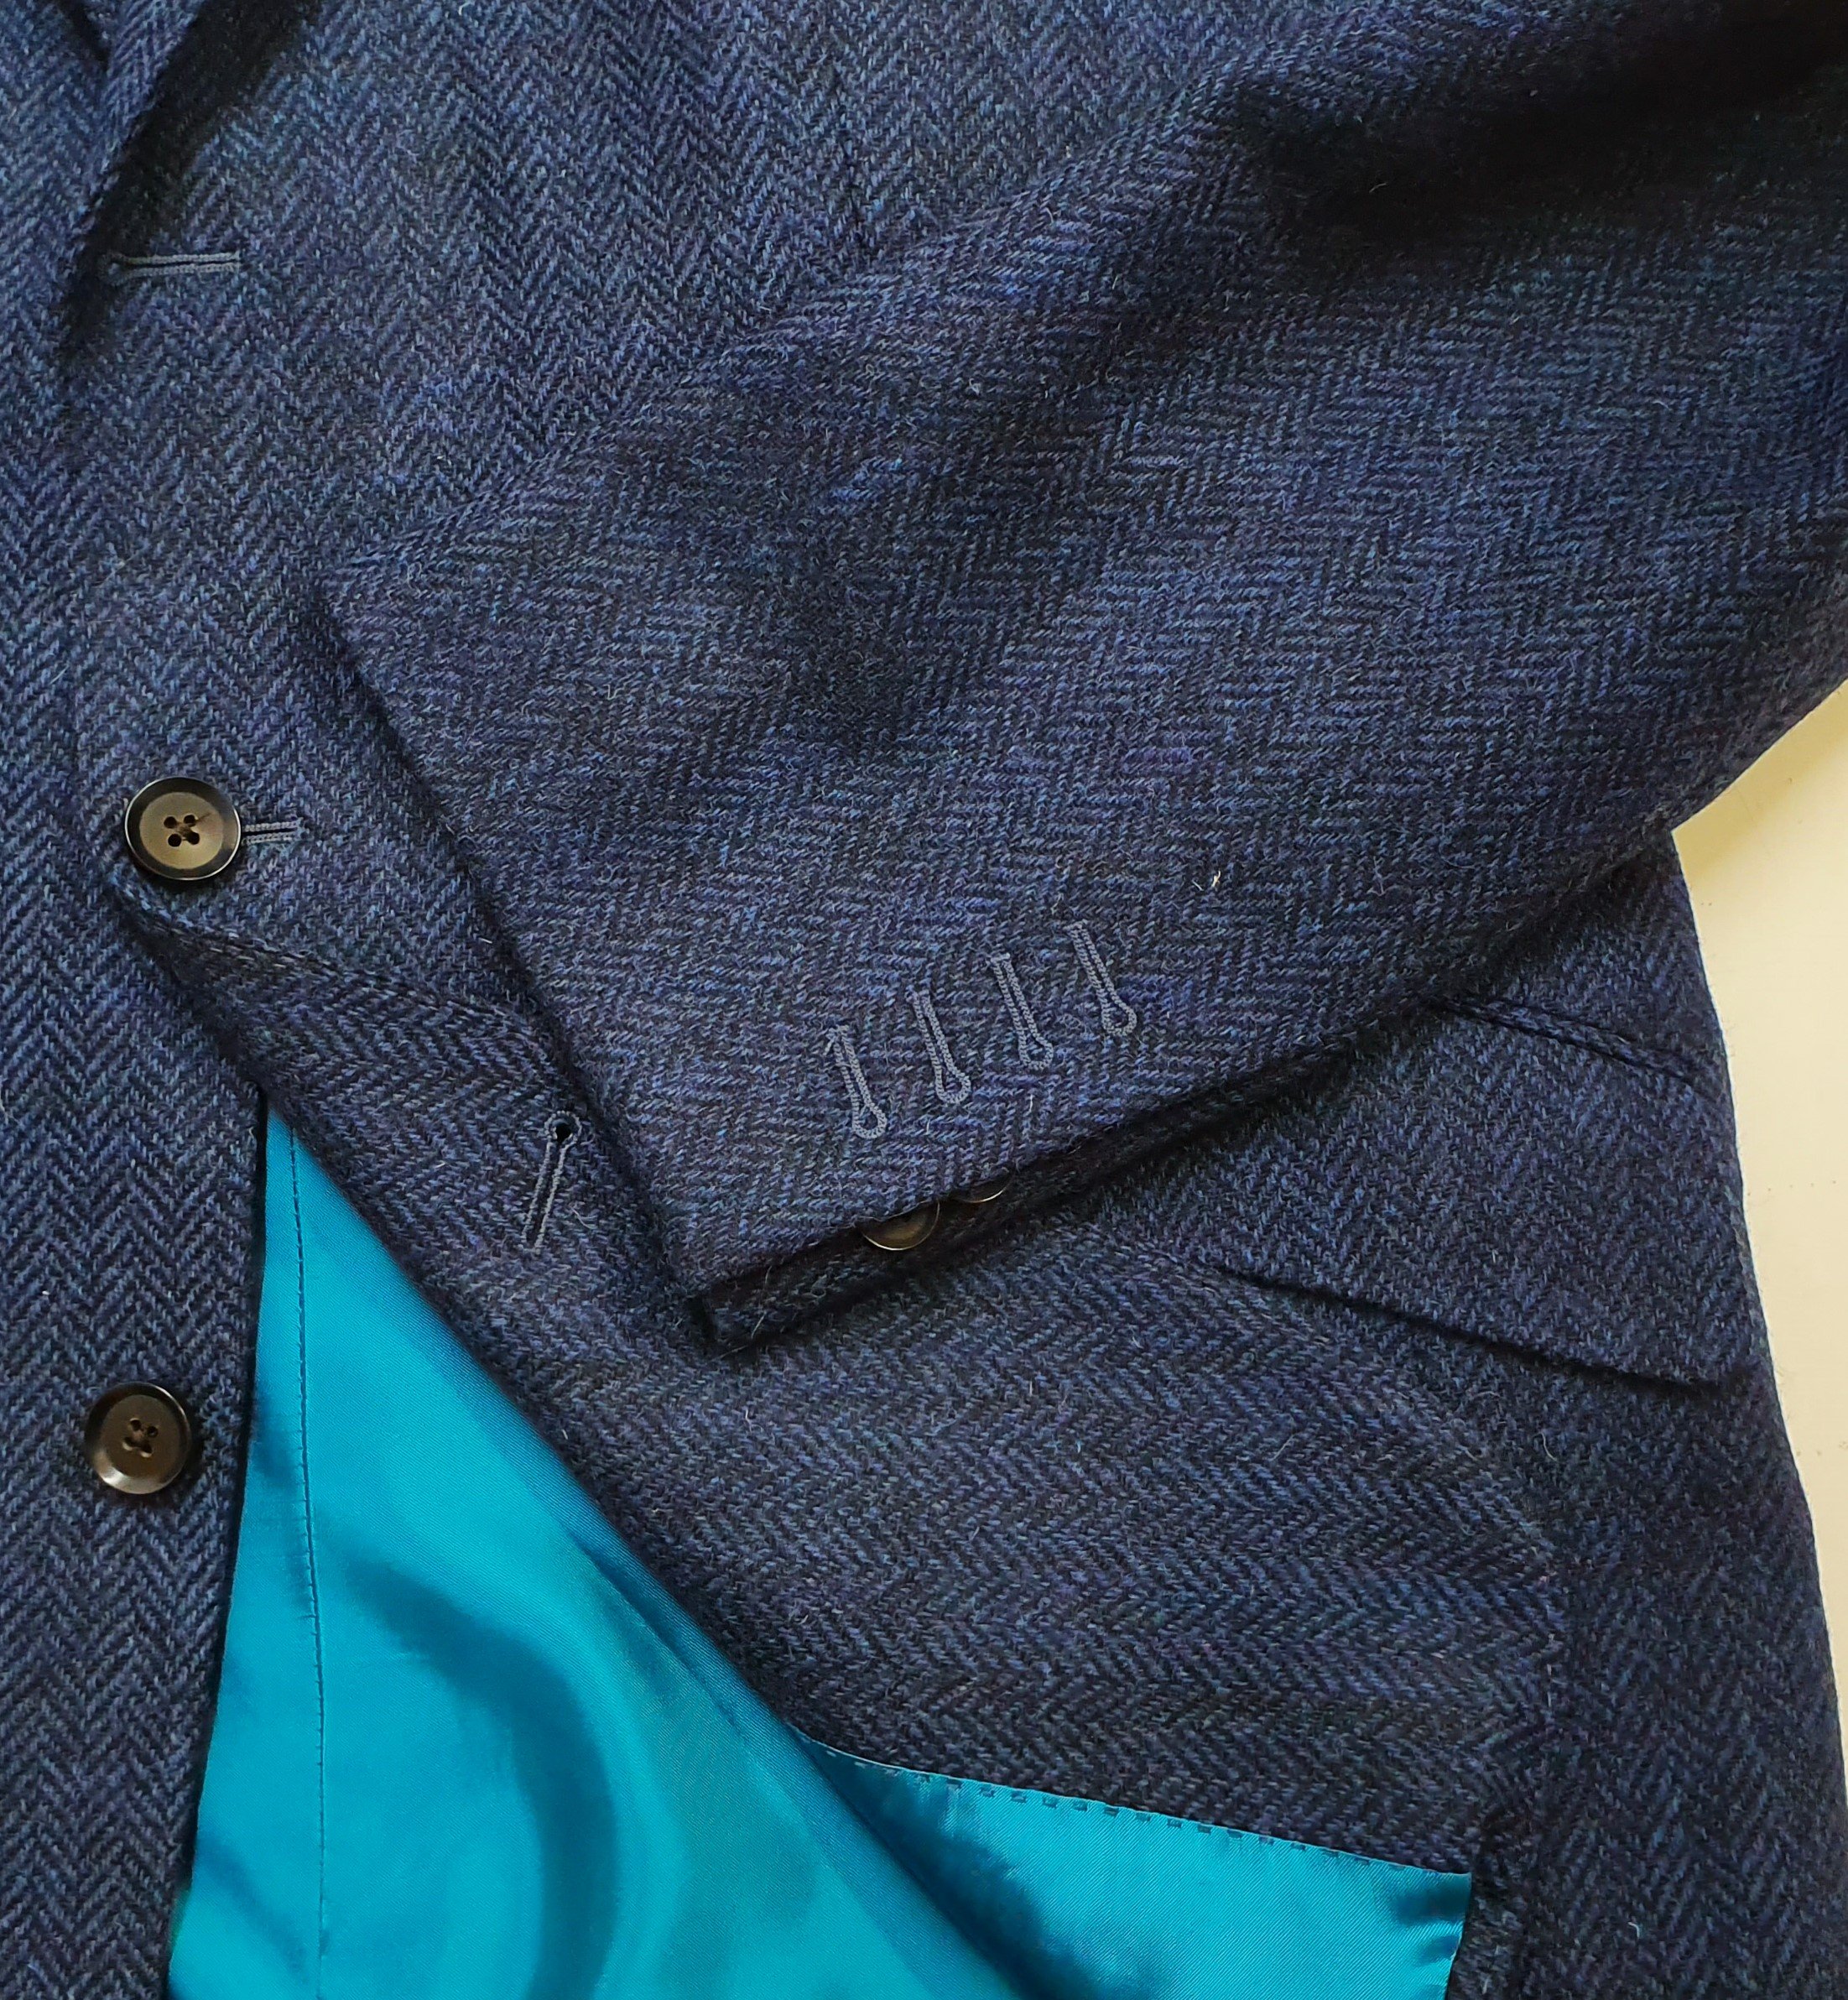 3 Piece Suit in Holland and Sherry Blue Herringbone Tweed (12).jpg